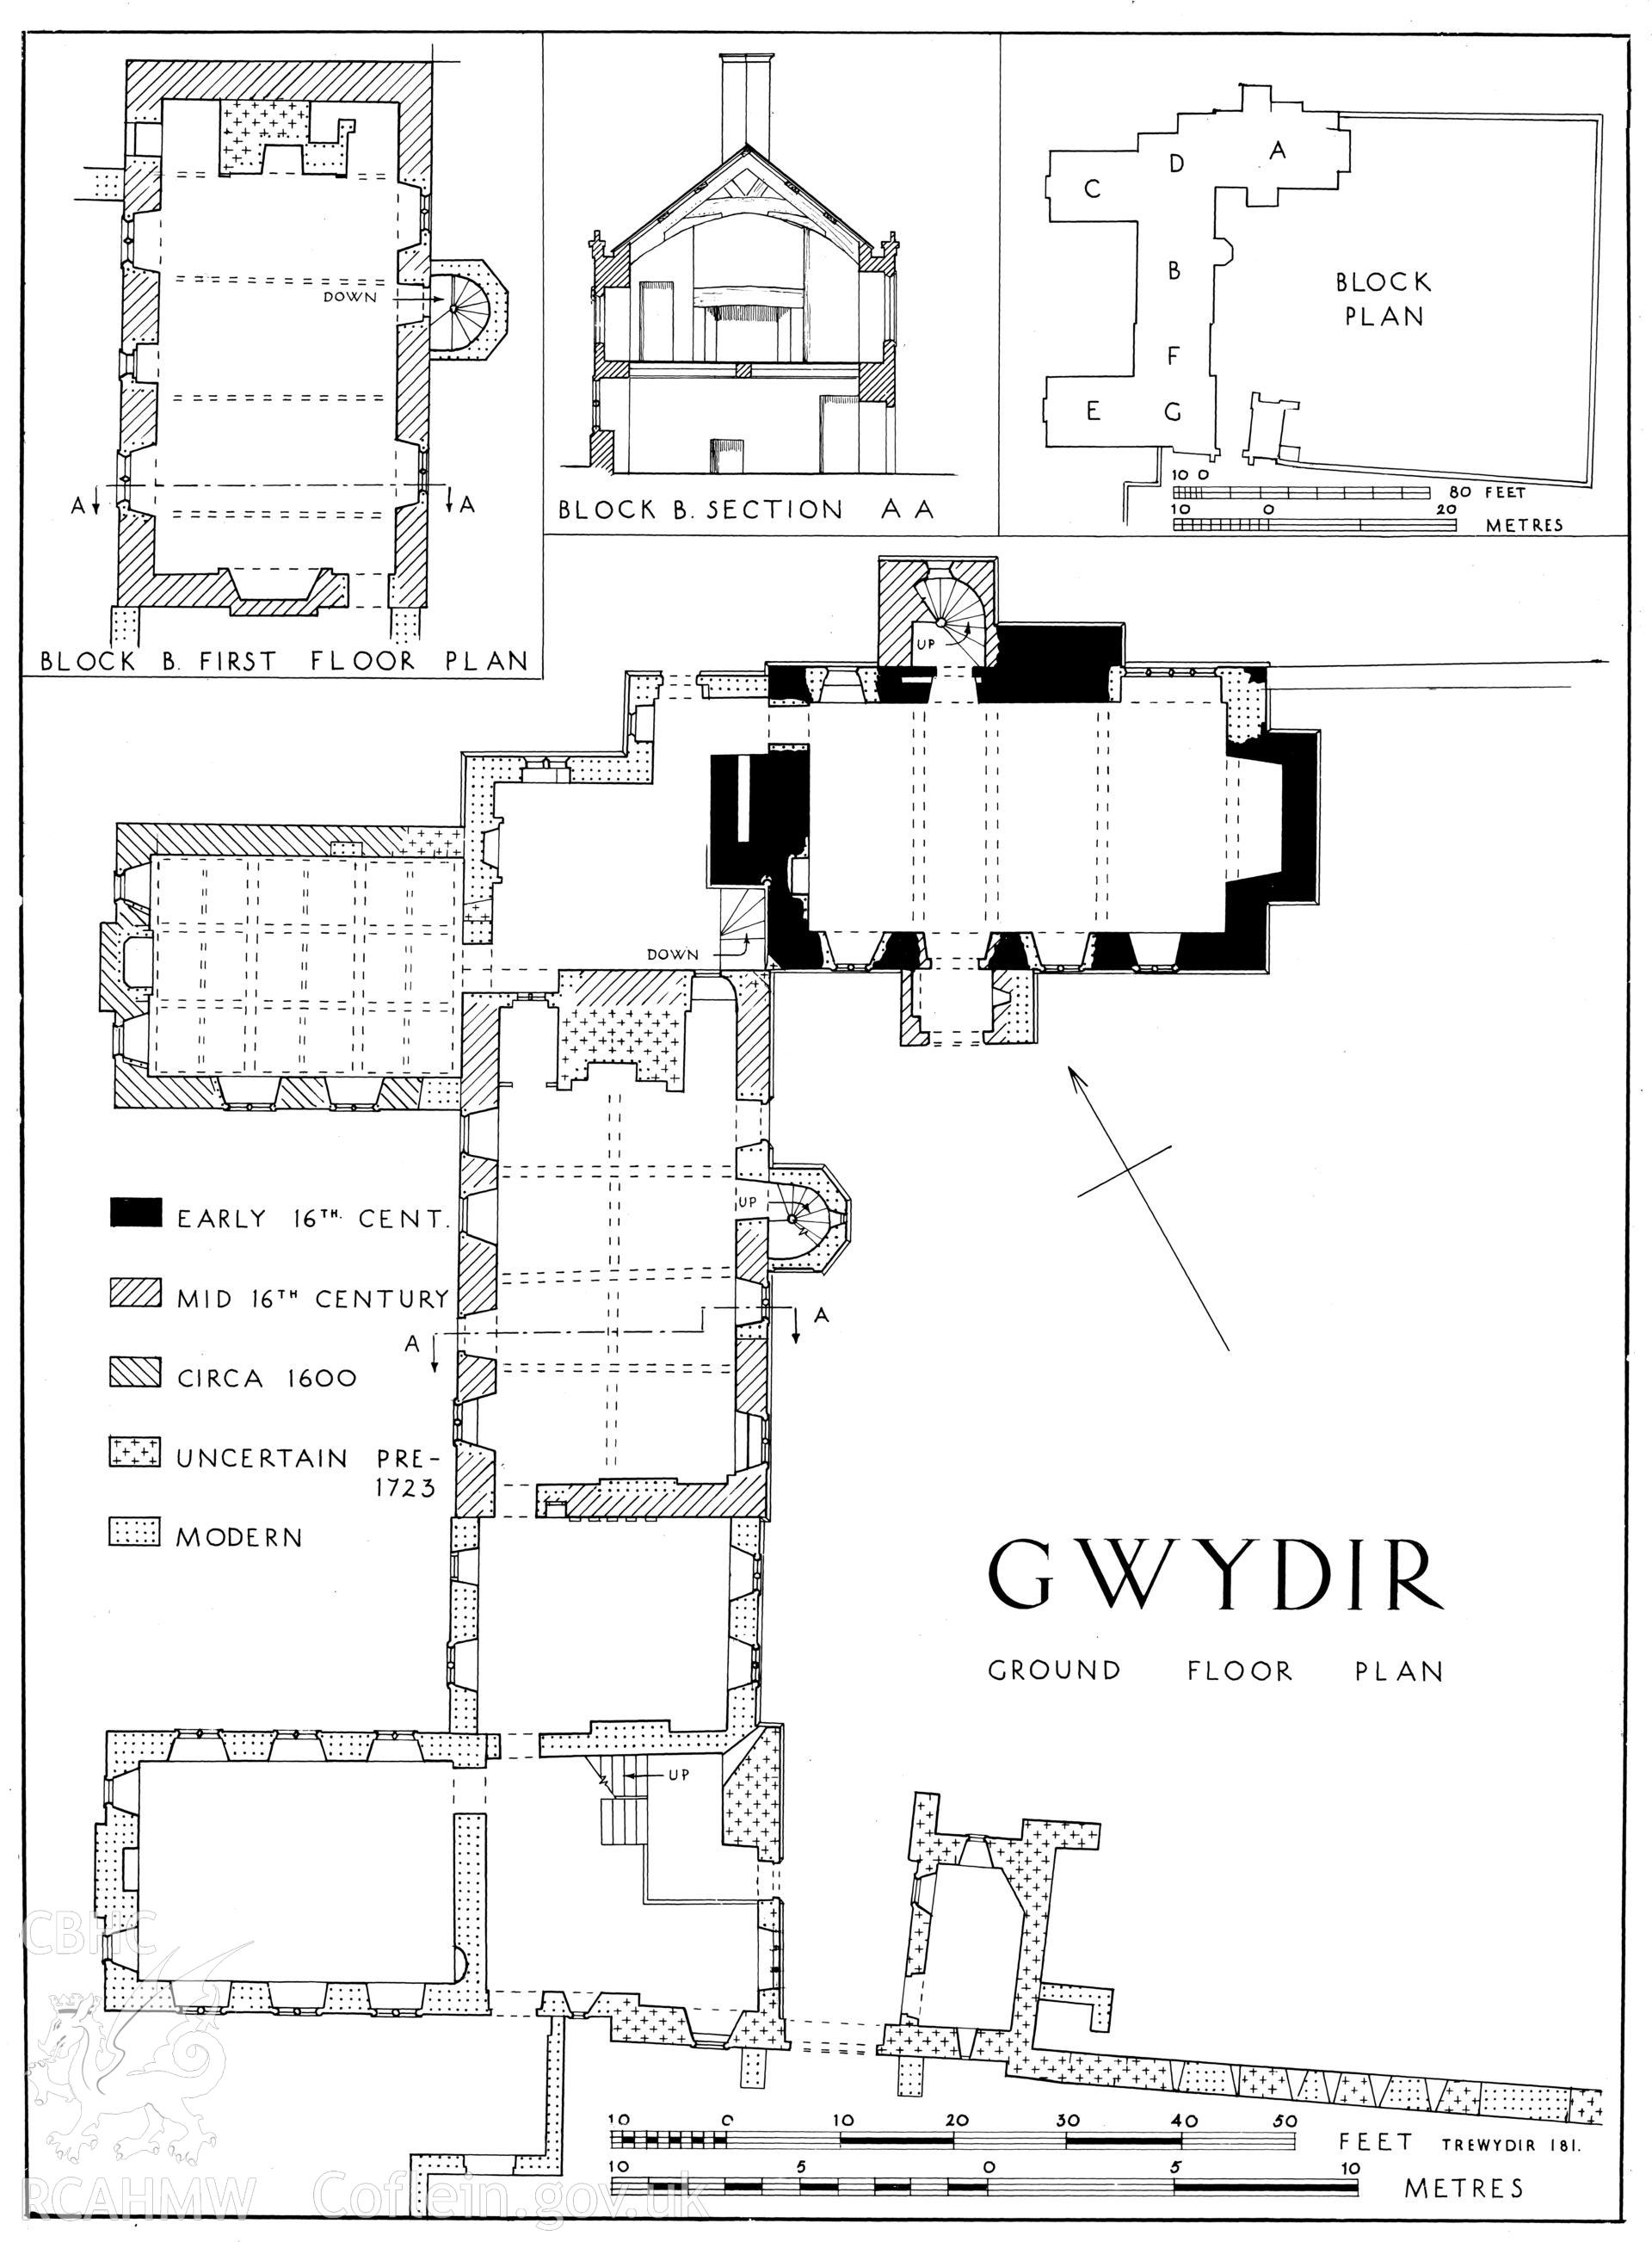 RCAHMW drawing (ink on film) showing plan & section of Gwydir, Trewydir, as published in Caerns Inventory vol I, fig 181.